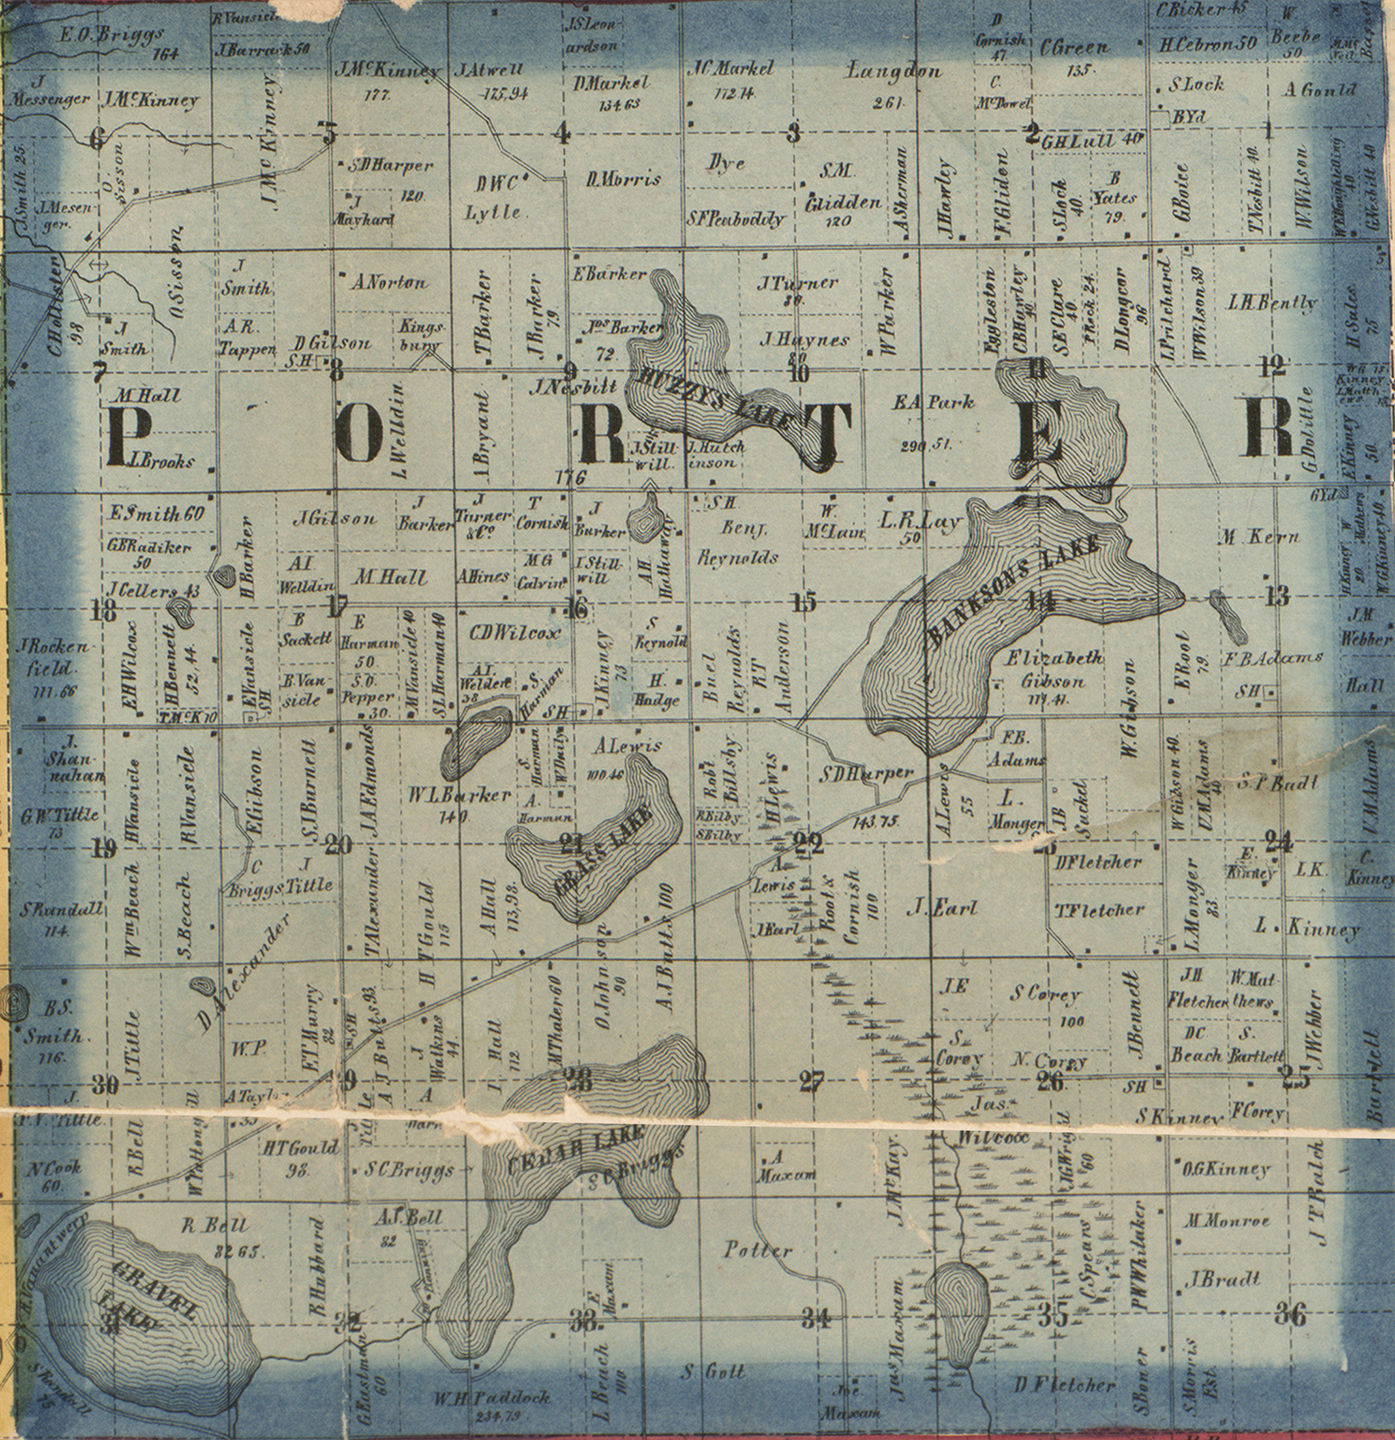 1860 Porter Township, Michigan landownership map